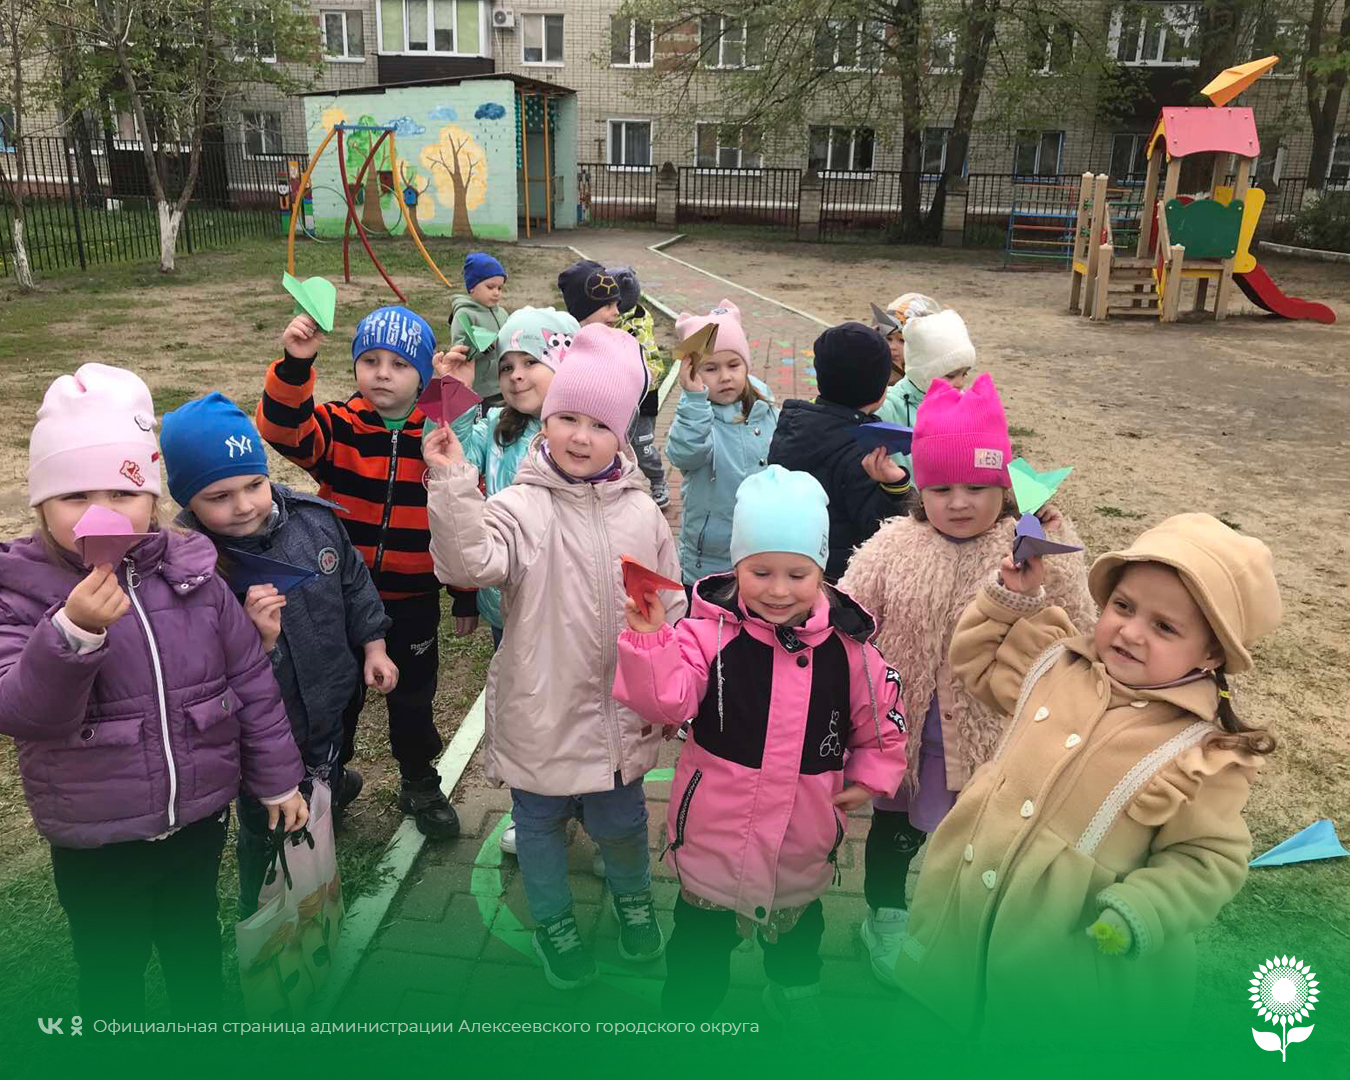 В детских садах Алексеевского городского округа отметили Международный день бумажных самолётиков.